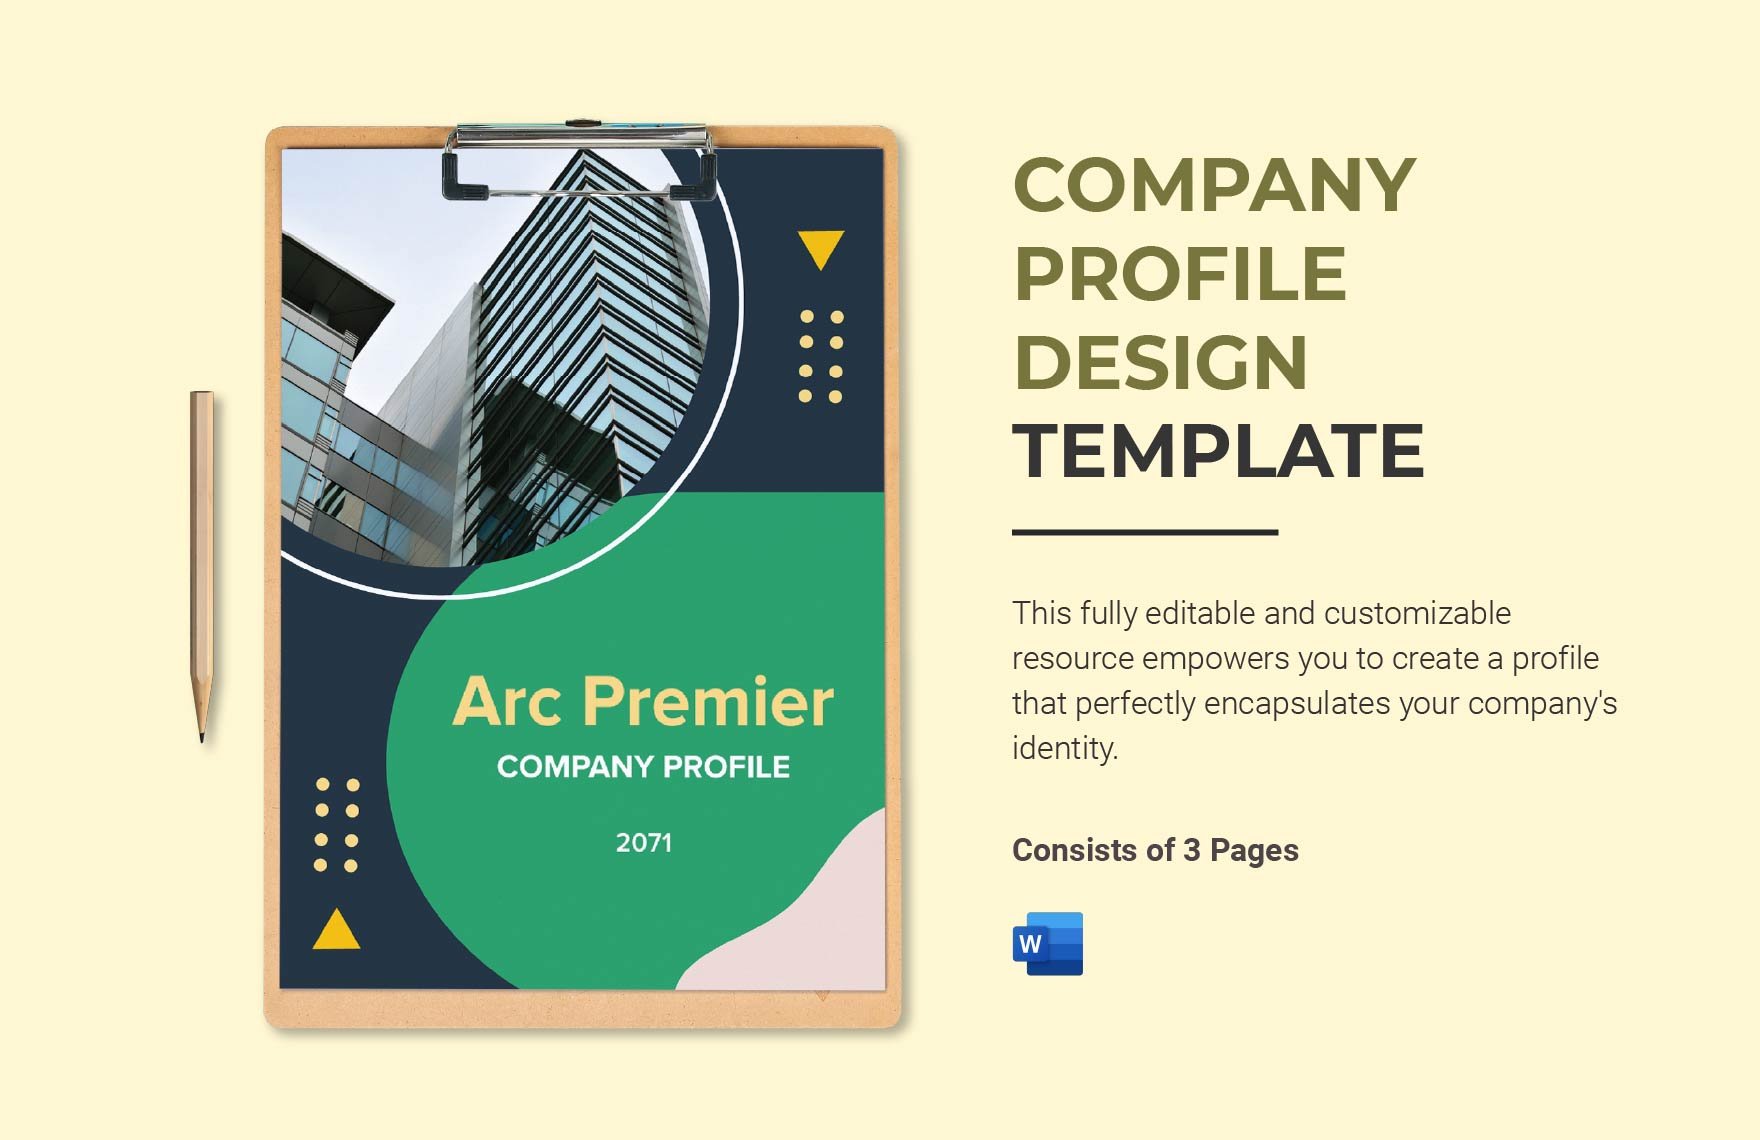 Company Profile Design Template